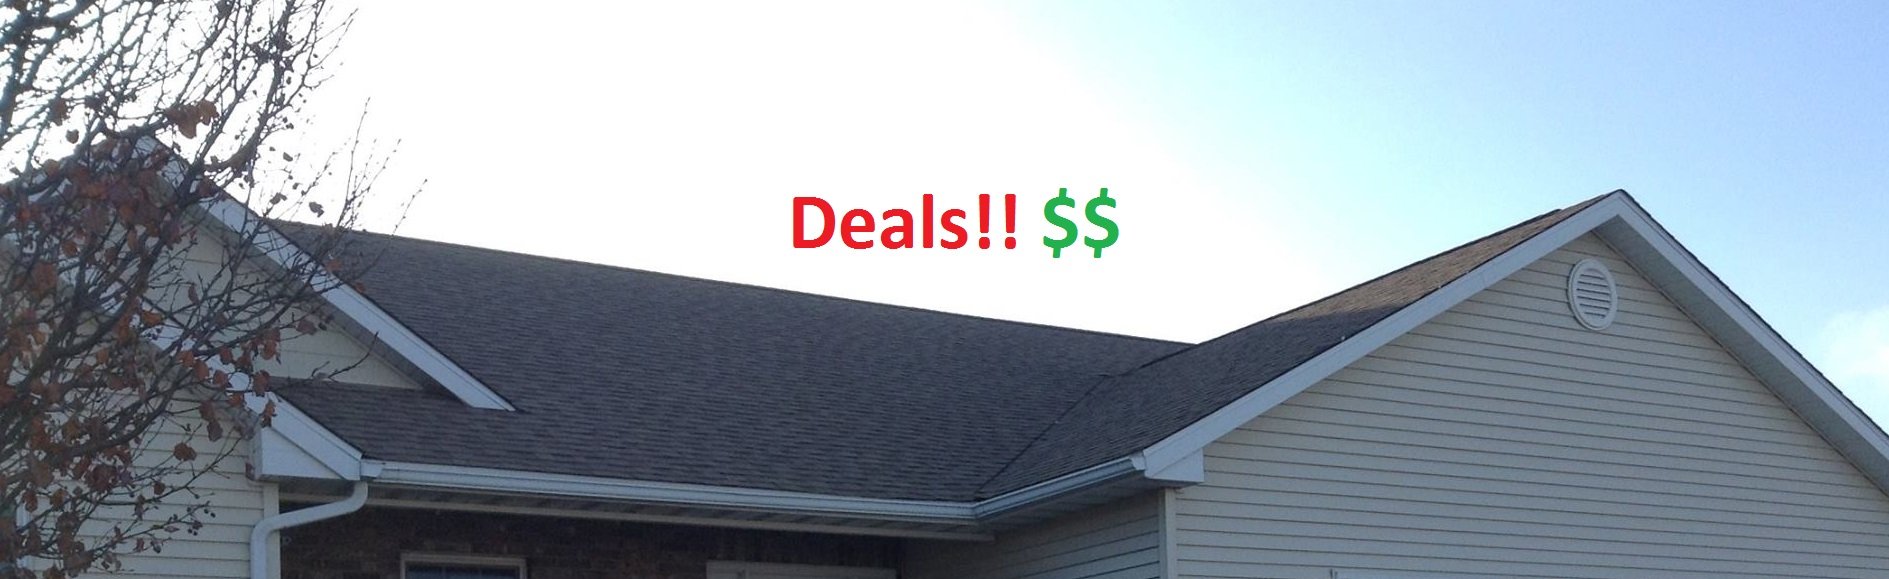 Roofing Deals